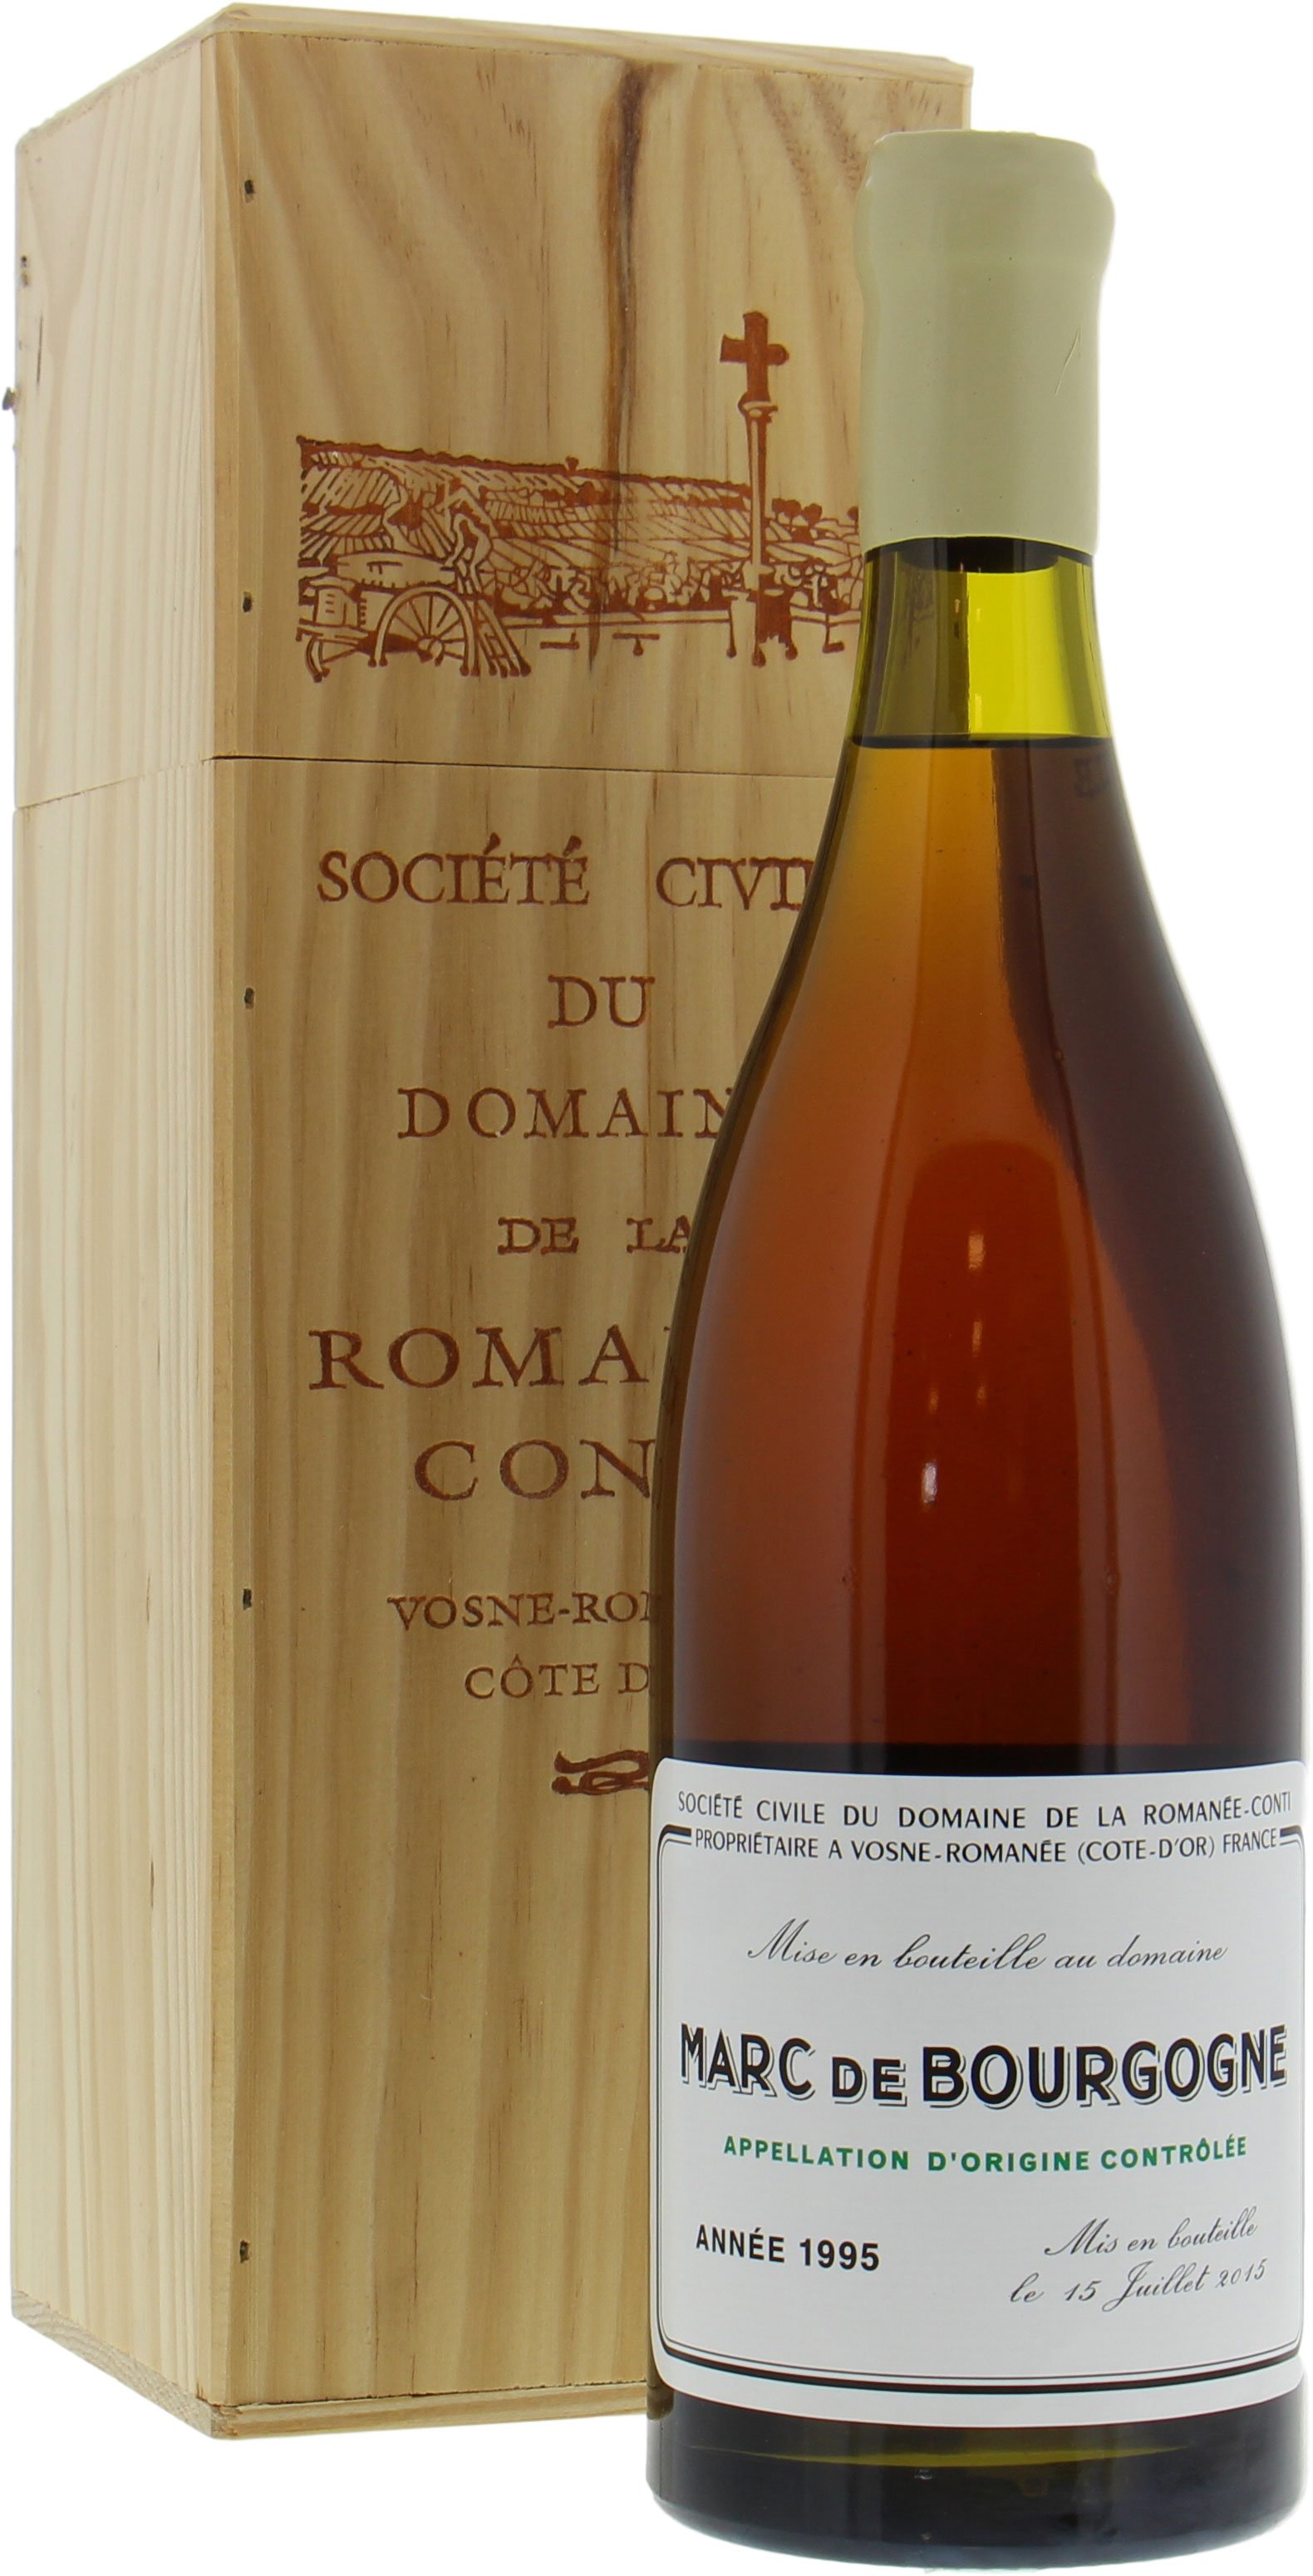 Domaine de la Romanee Conti - Marc de Bourgogne 1995